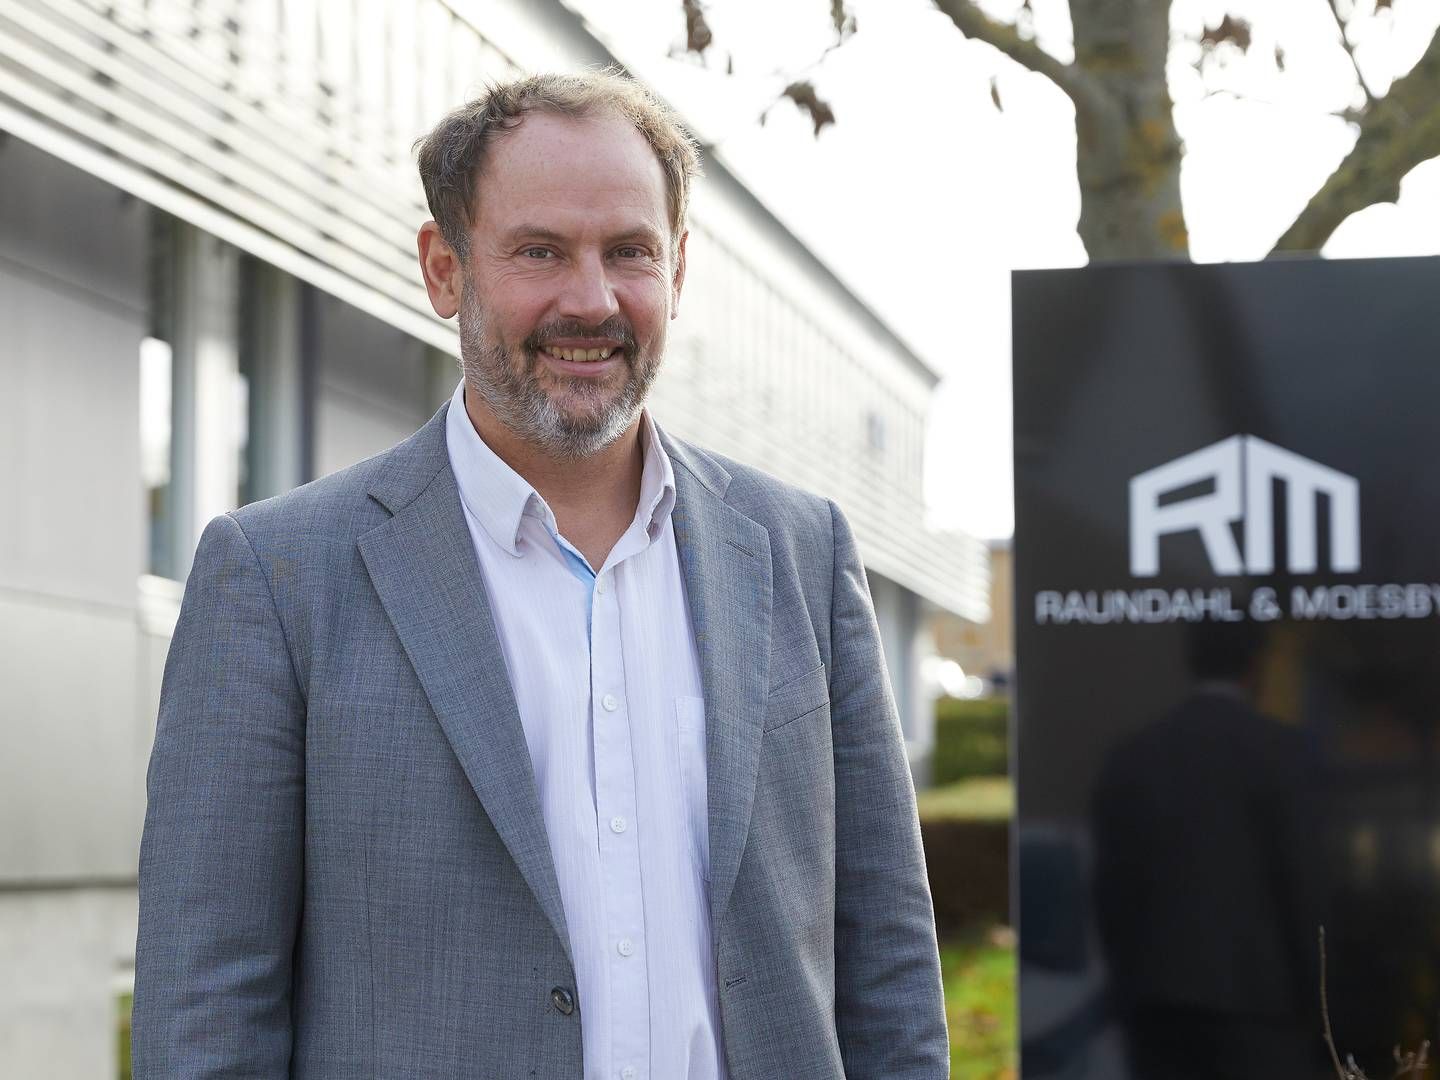 Carsten Raundahl, adm. direktør hos Raundahl & Moesby, der sammen med KP Invest ejer halvdelen af Ænergy. Den resterende halvdel ejes af Jysk Energi. | Foto: Pr / Raundahl & Moesby